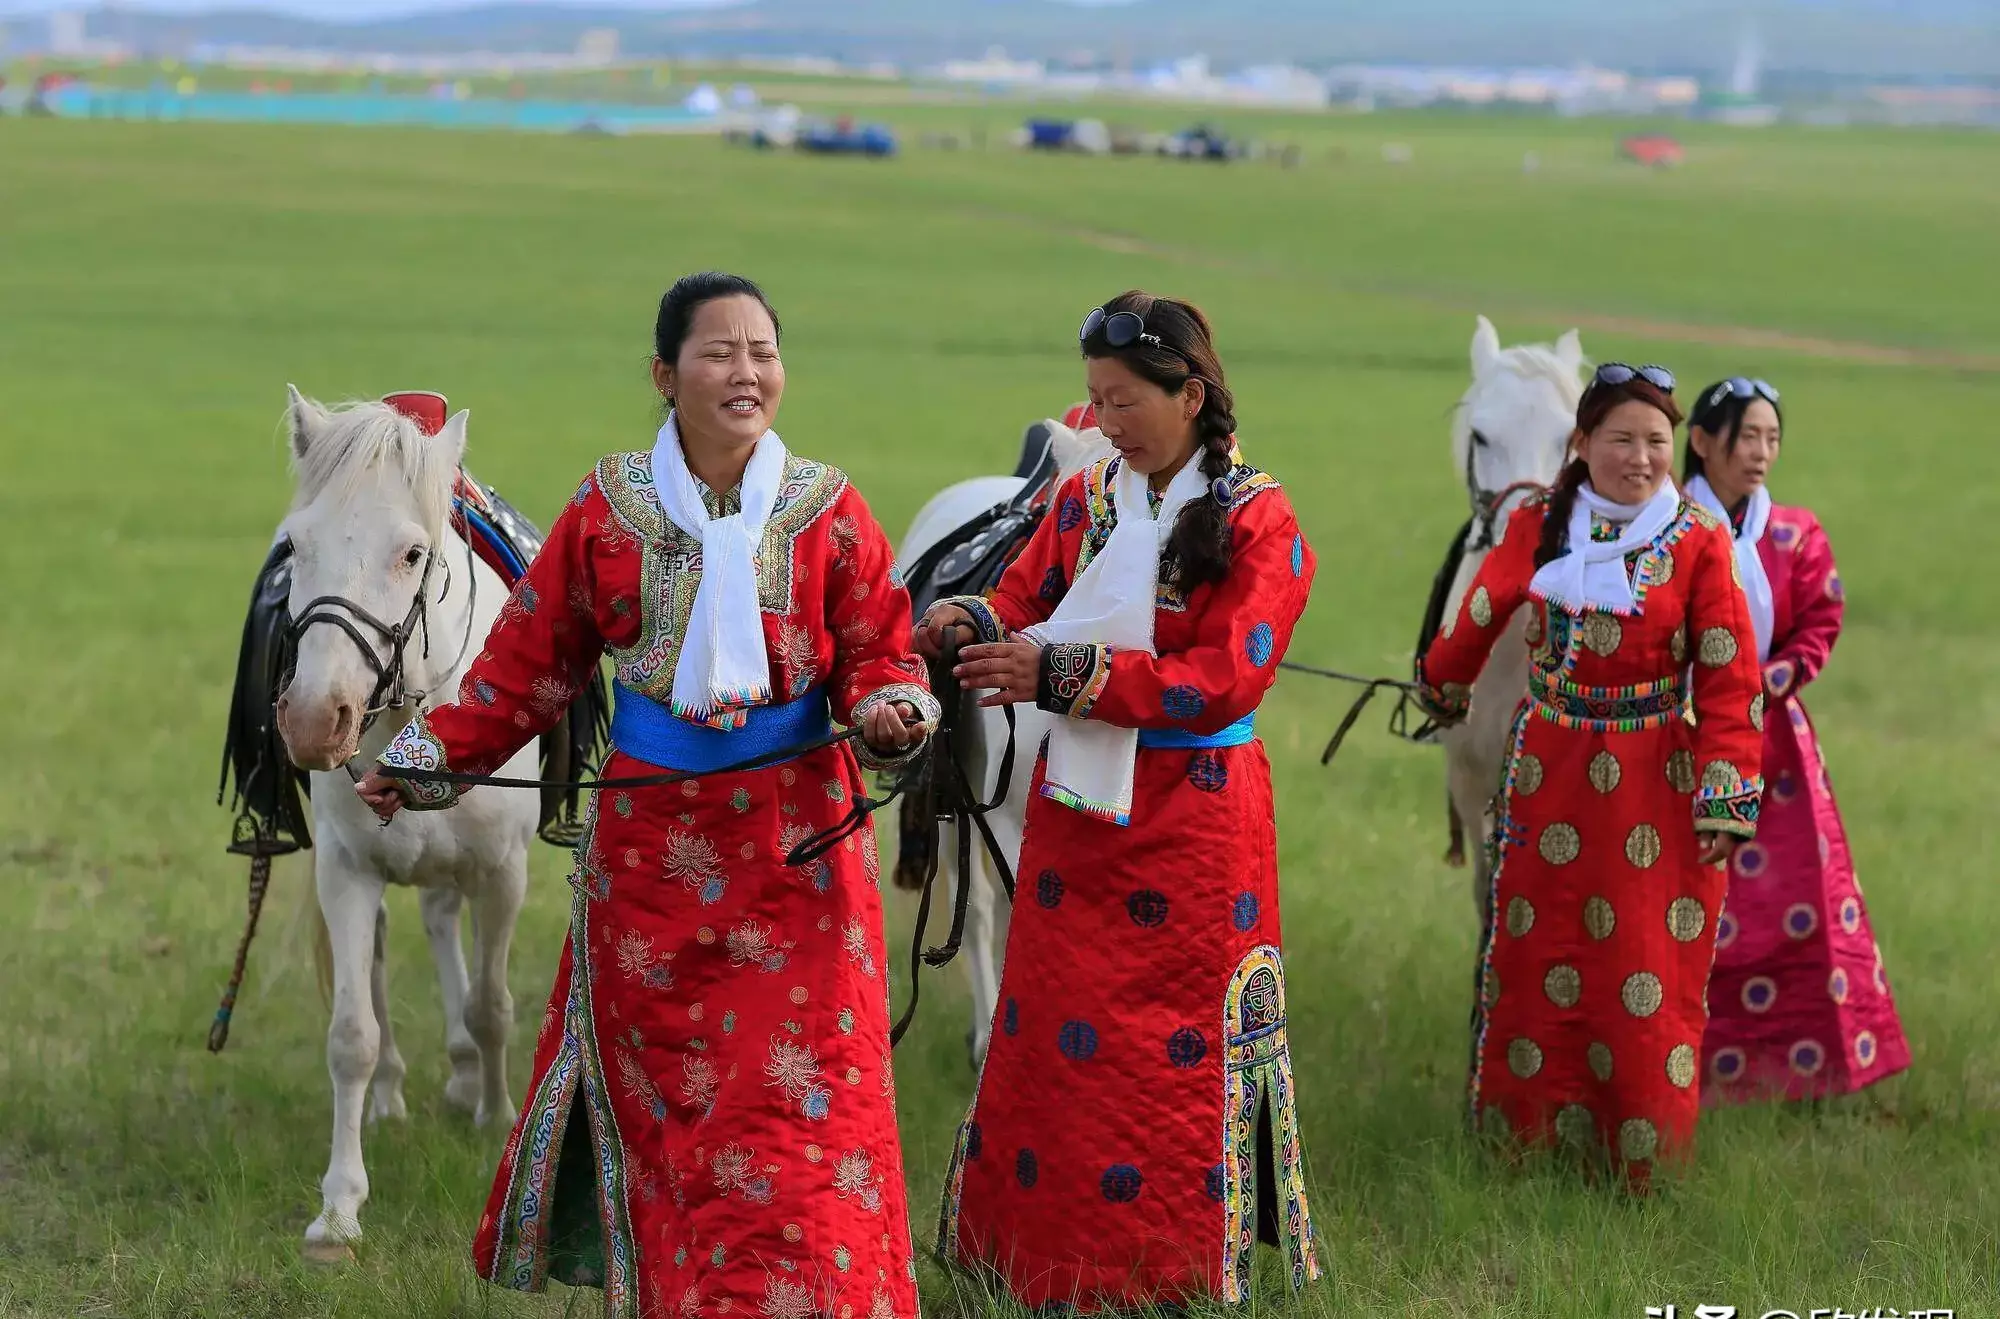 内蒙古最了不得的两大姓氏家族——云家和包家